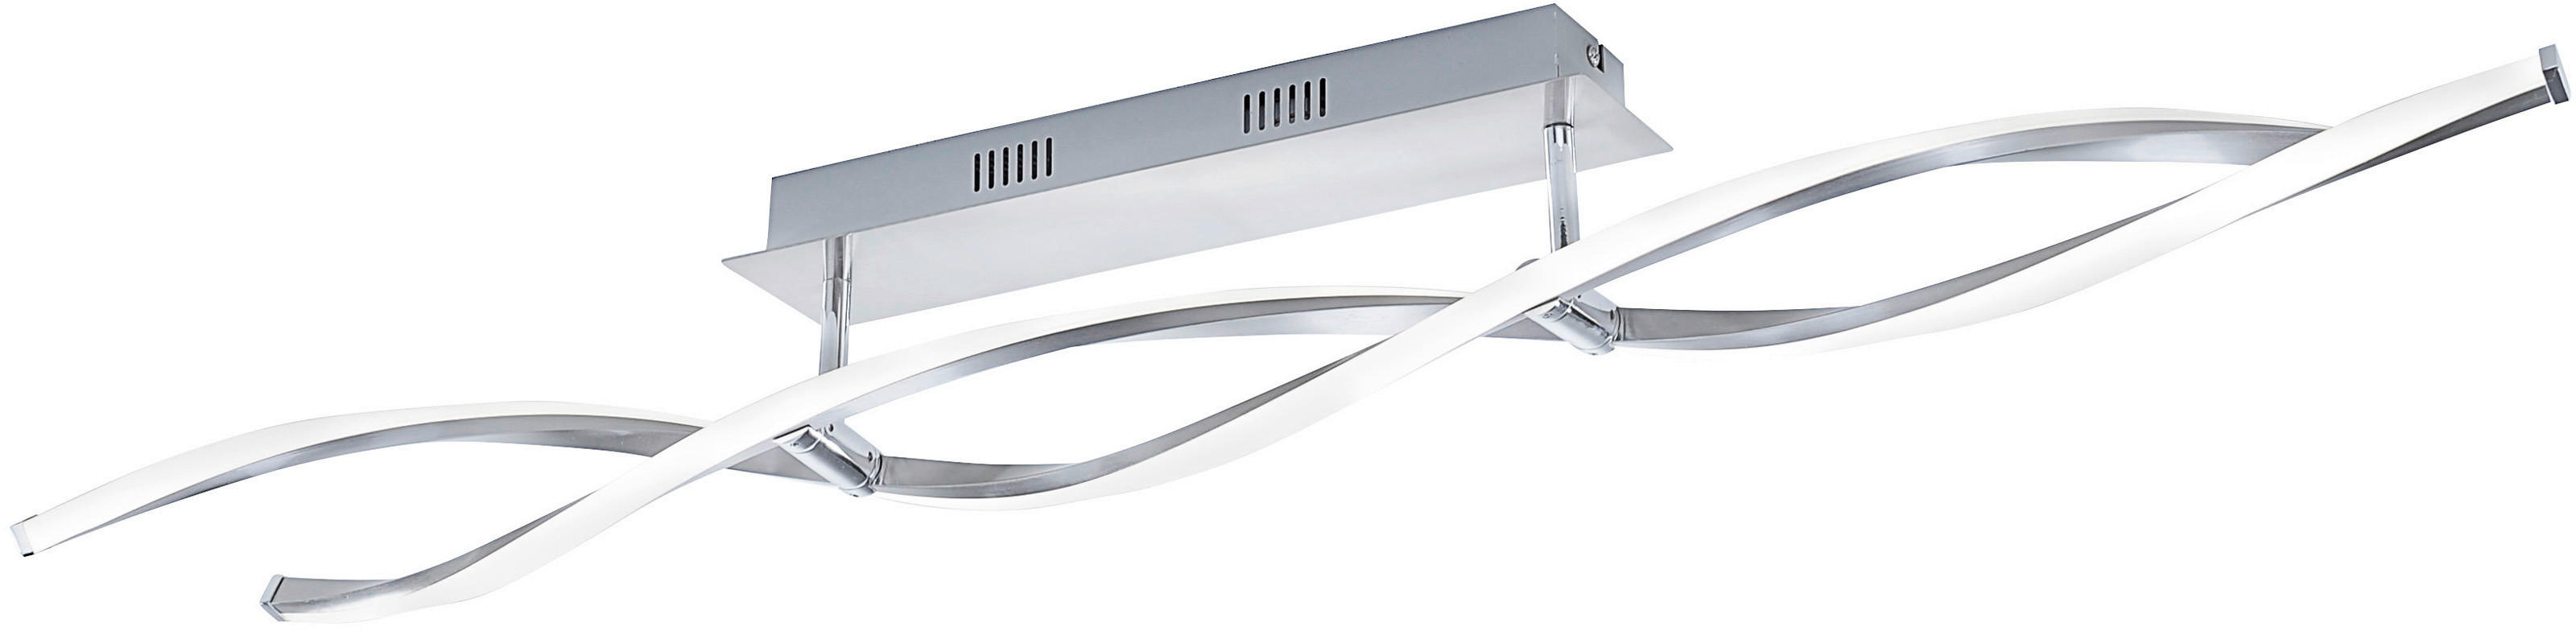 LED-DECKENLEUCHTE    110/8/15,6 cm  - Nickelfarben, Design, Metall (110/8/15,6cm) - Paul Neuhaus